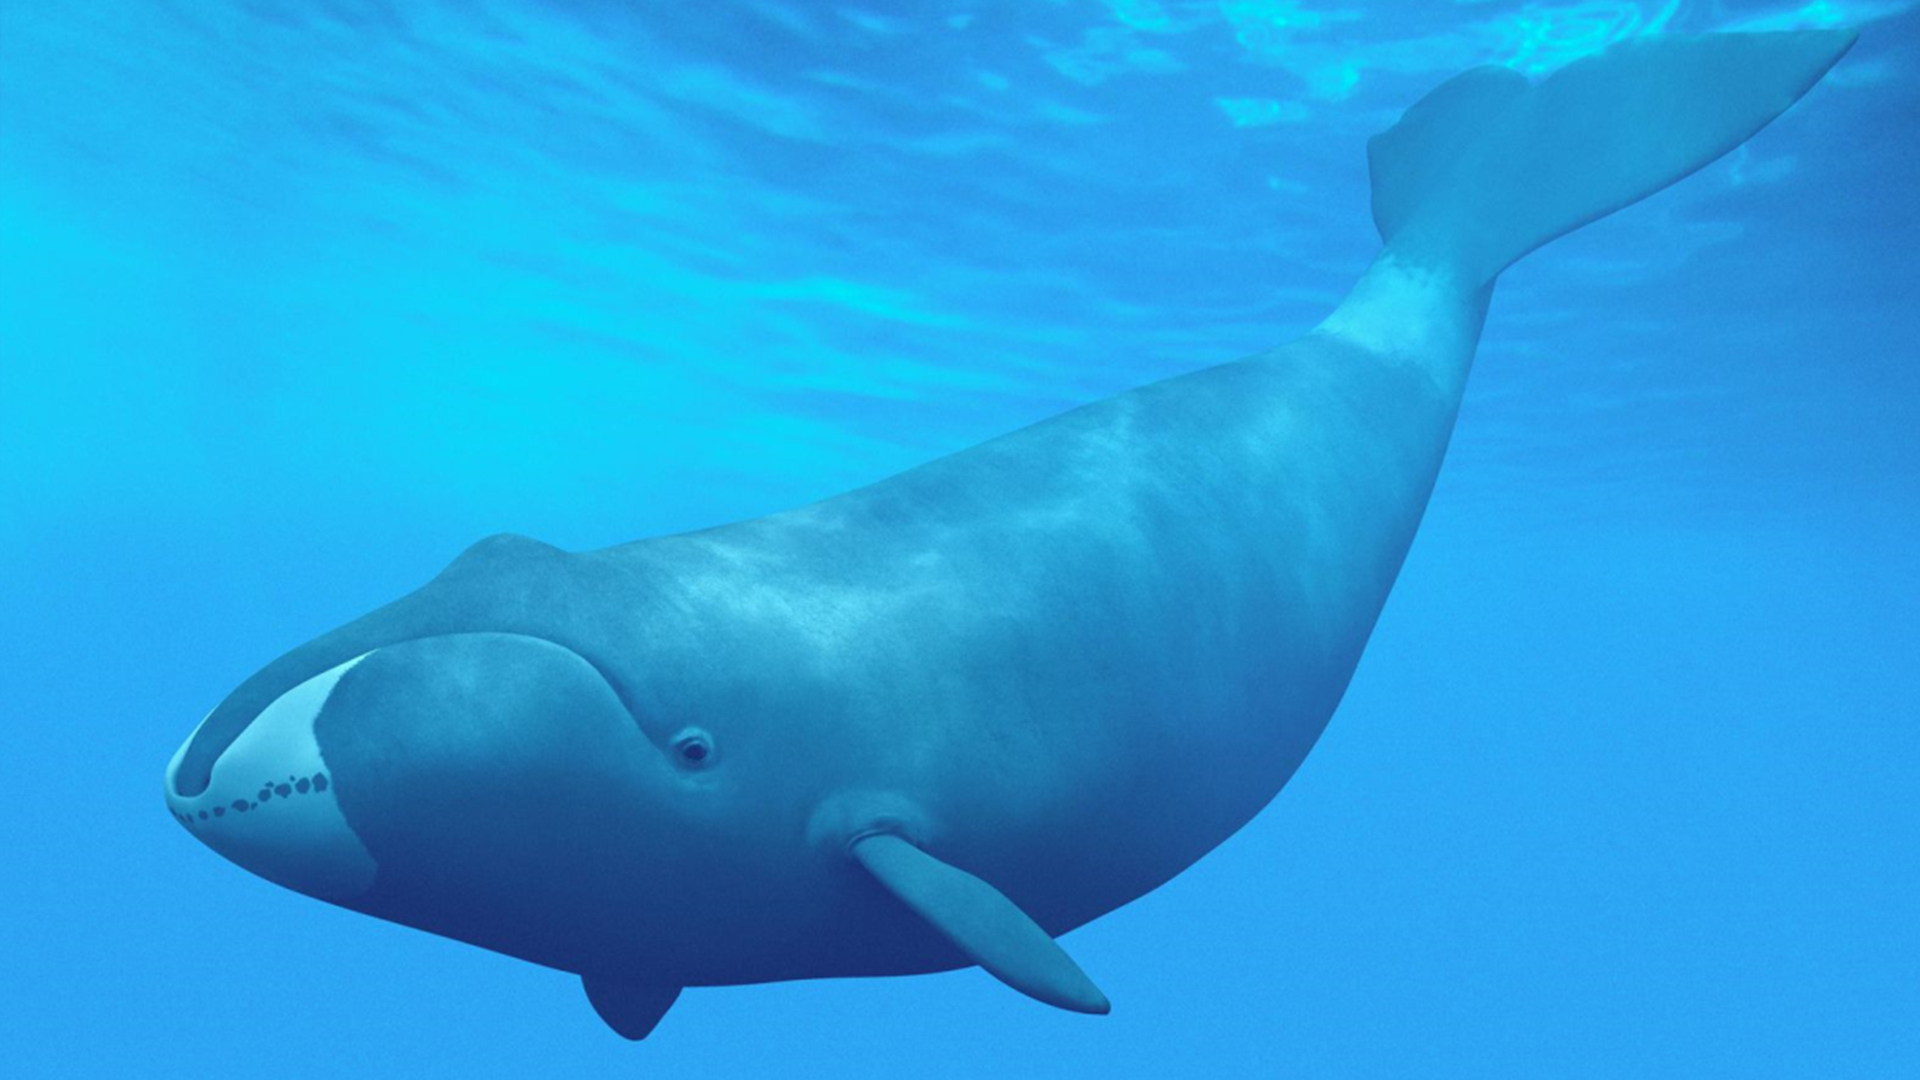 盘点地球上最大的10种鲸鱼,座头鲸仅排第7,蓝鲸一天要吃4吨